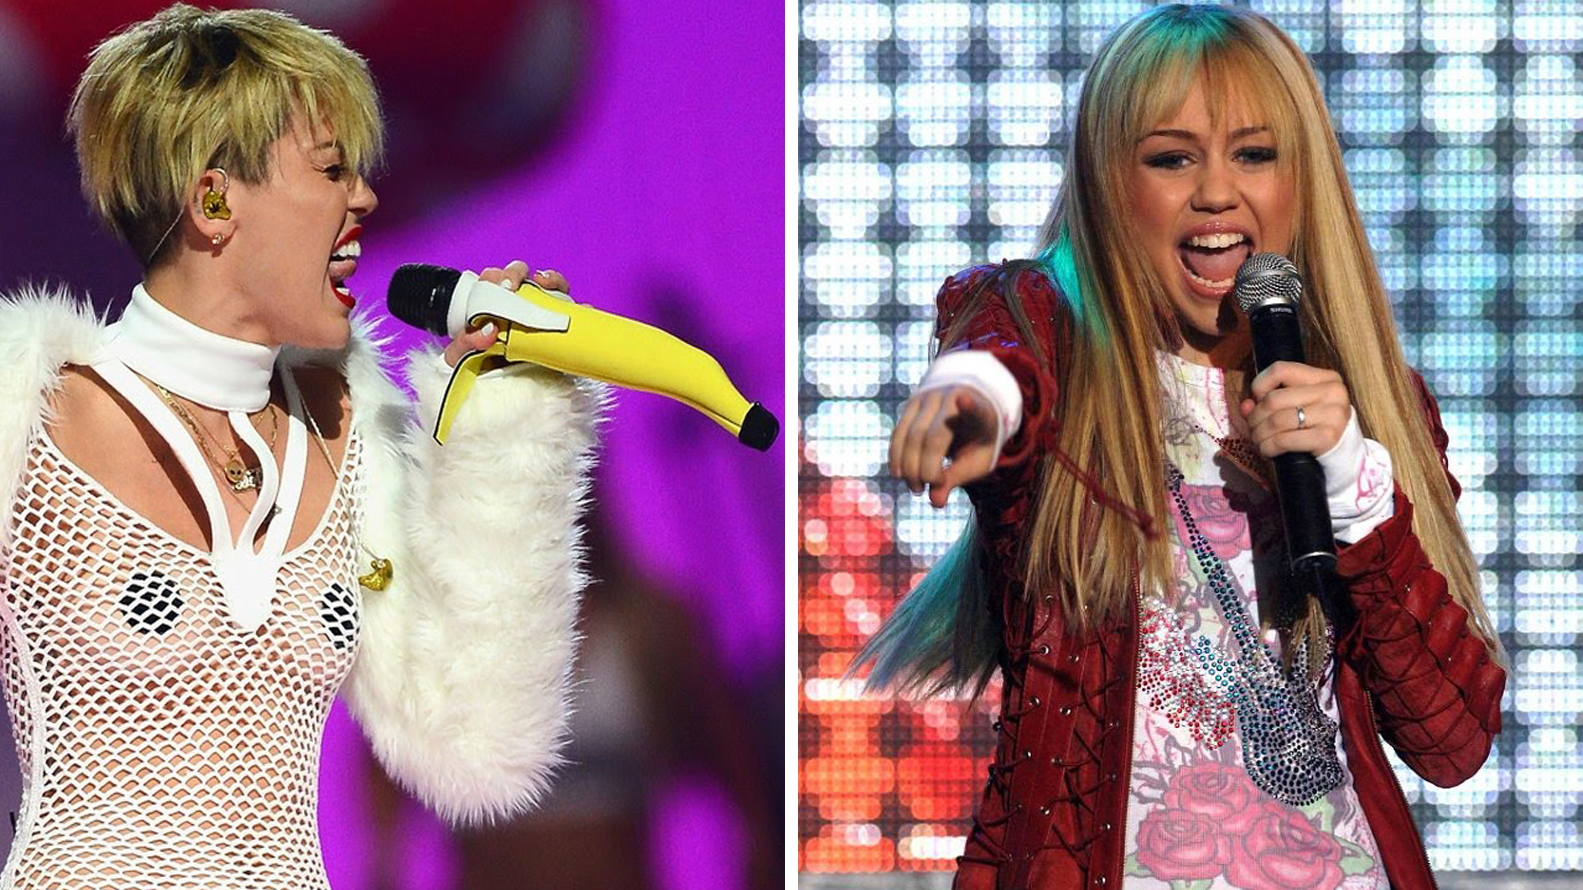 Miley dio un siguiente paso cortándose por completo su larga cabellera, dando inicio a la era musical que cambió su historia y la de la cultura pop